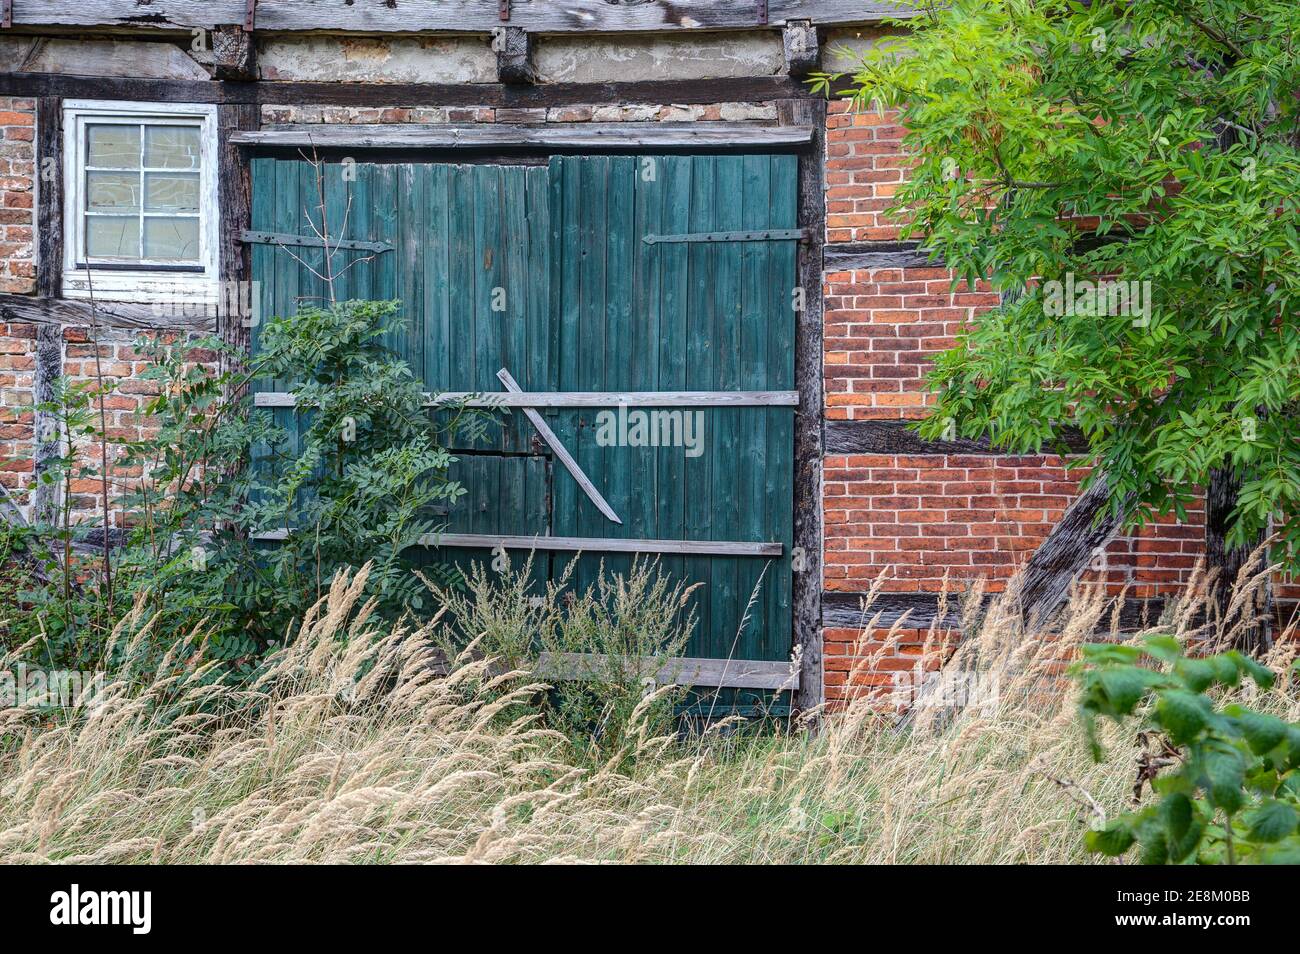 Ländlich, urwüchsig, rustikal, die alte grüne Scheune Tür auf dem verlassenen Bauernhof schickt uns zurück in eine Zeit, als alles noch einfacher und weniger kompliziert war. Stockfoto